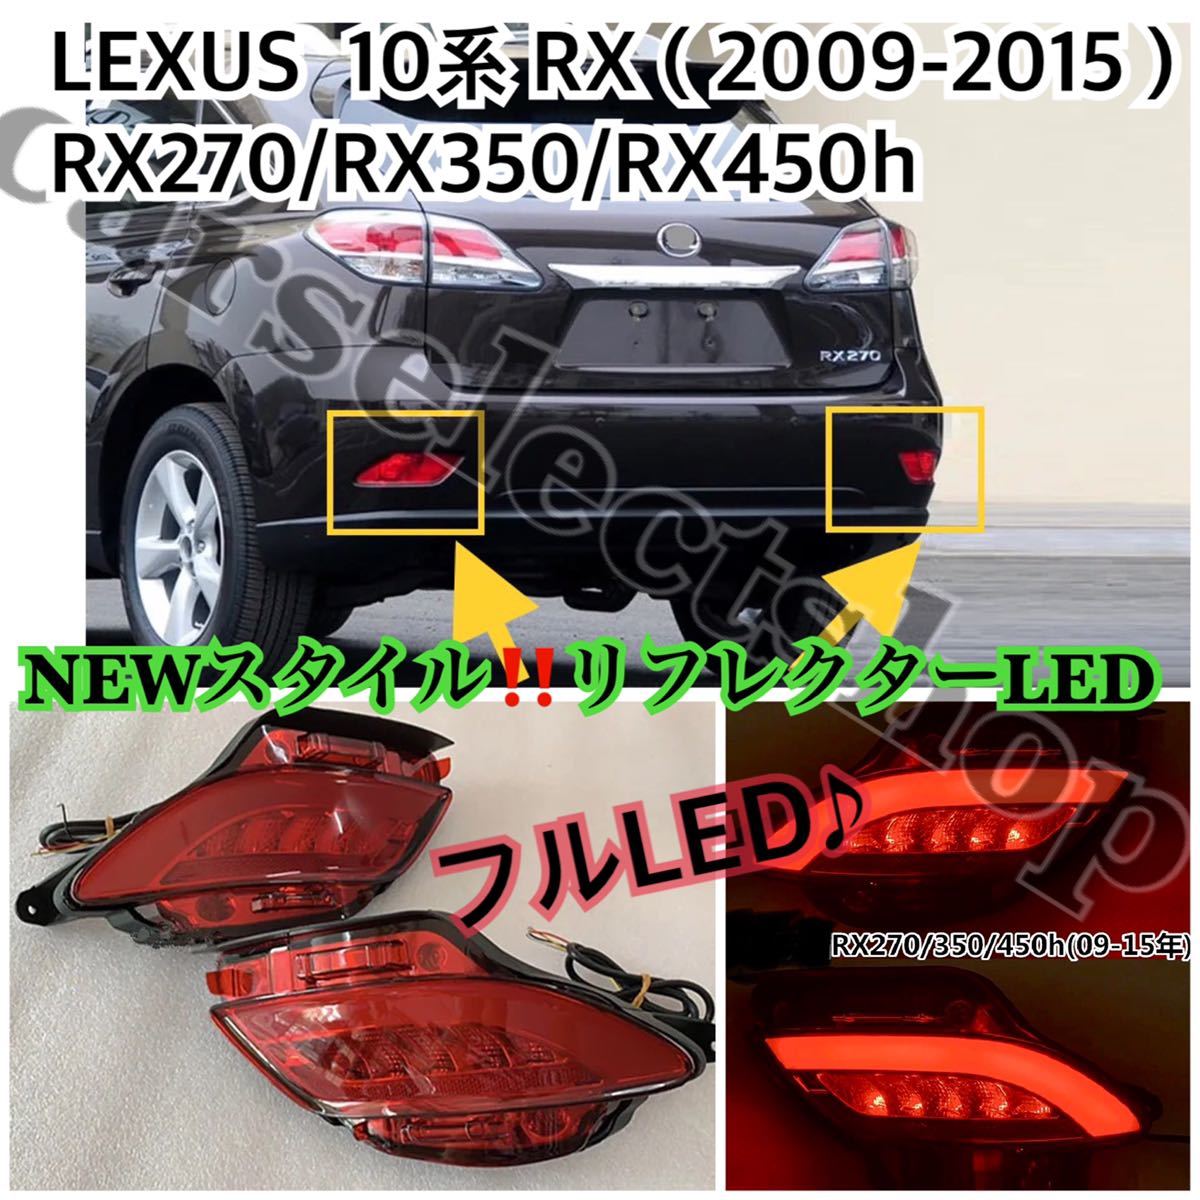 NEWスタイル/LEXUS 10系RX リフレクターLED 左右セット/フルLED/レクサス /RX270/RX350/RX450h[2009-2015]テールライト/テールランプ_画像1